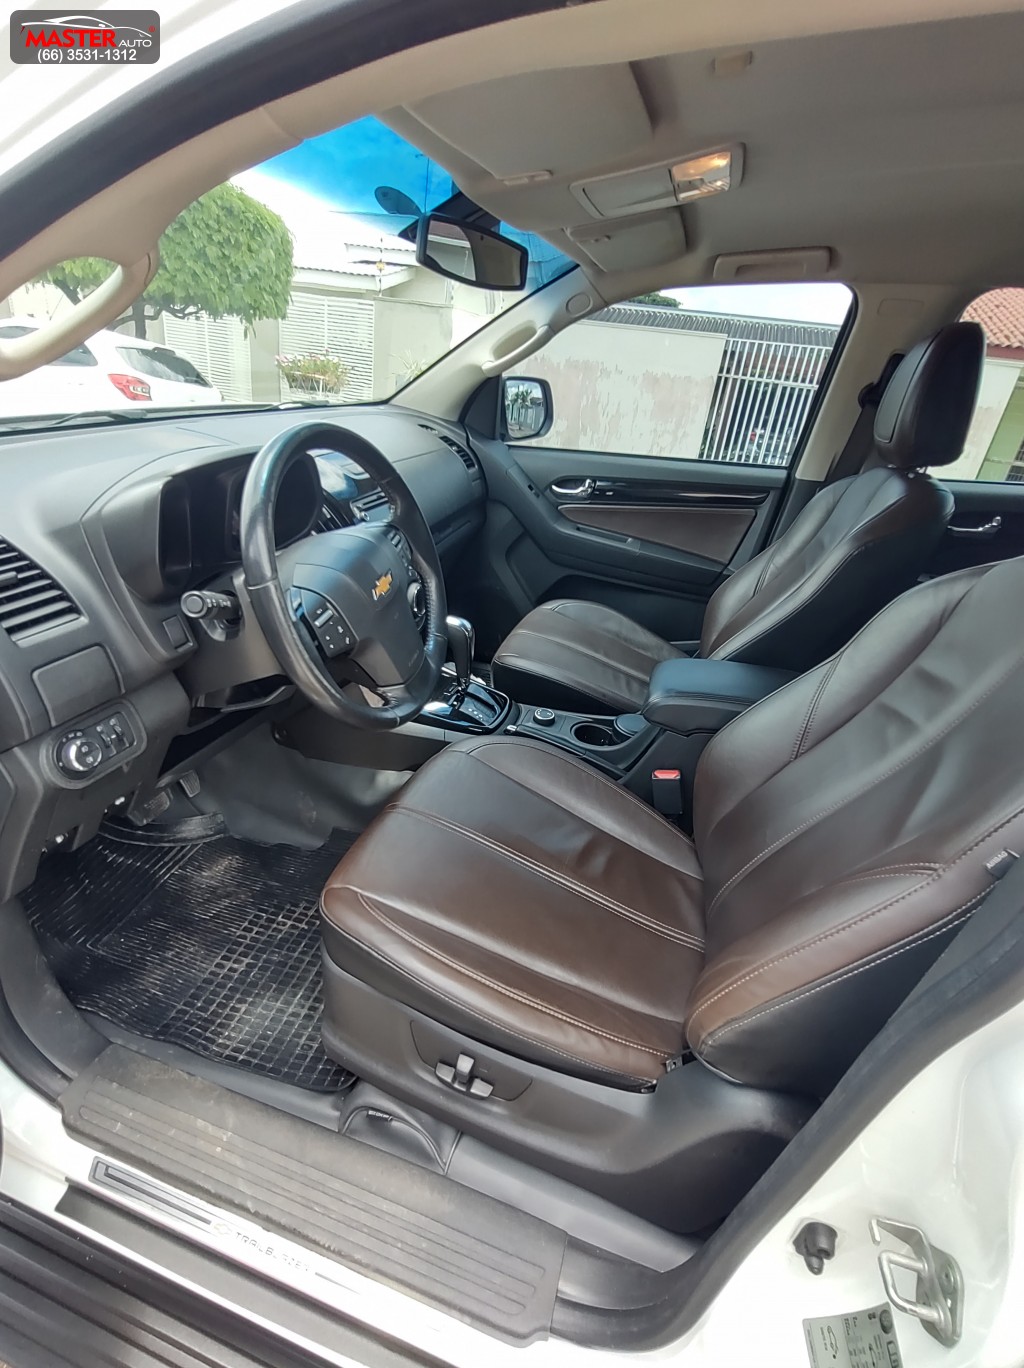 GM - Chevrolet TRAILBLAZER LTZ 3.6 V6  Aut. 2015